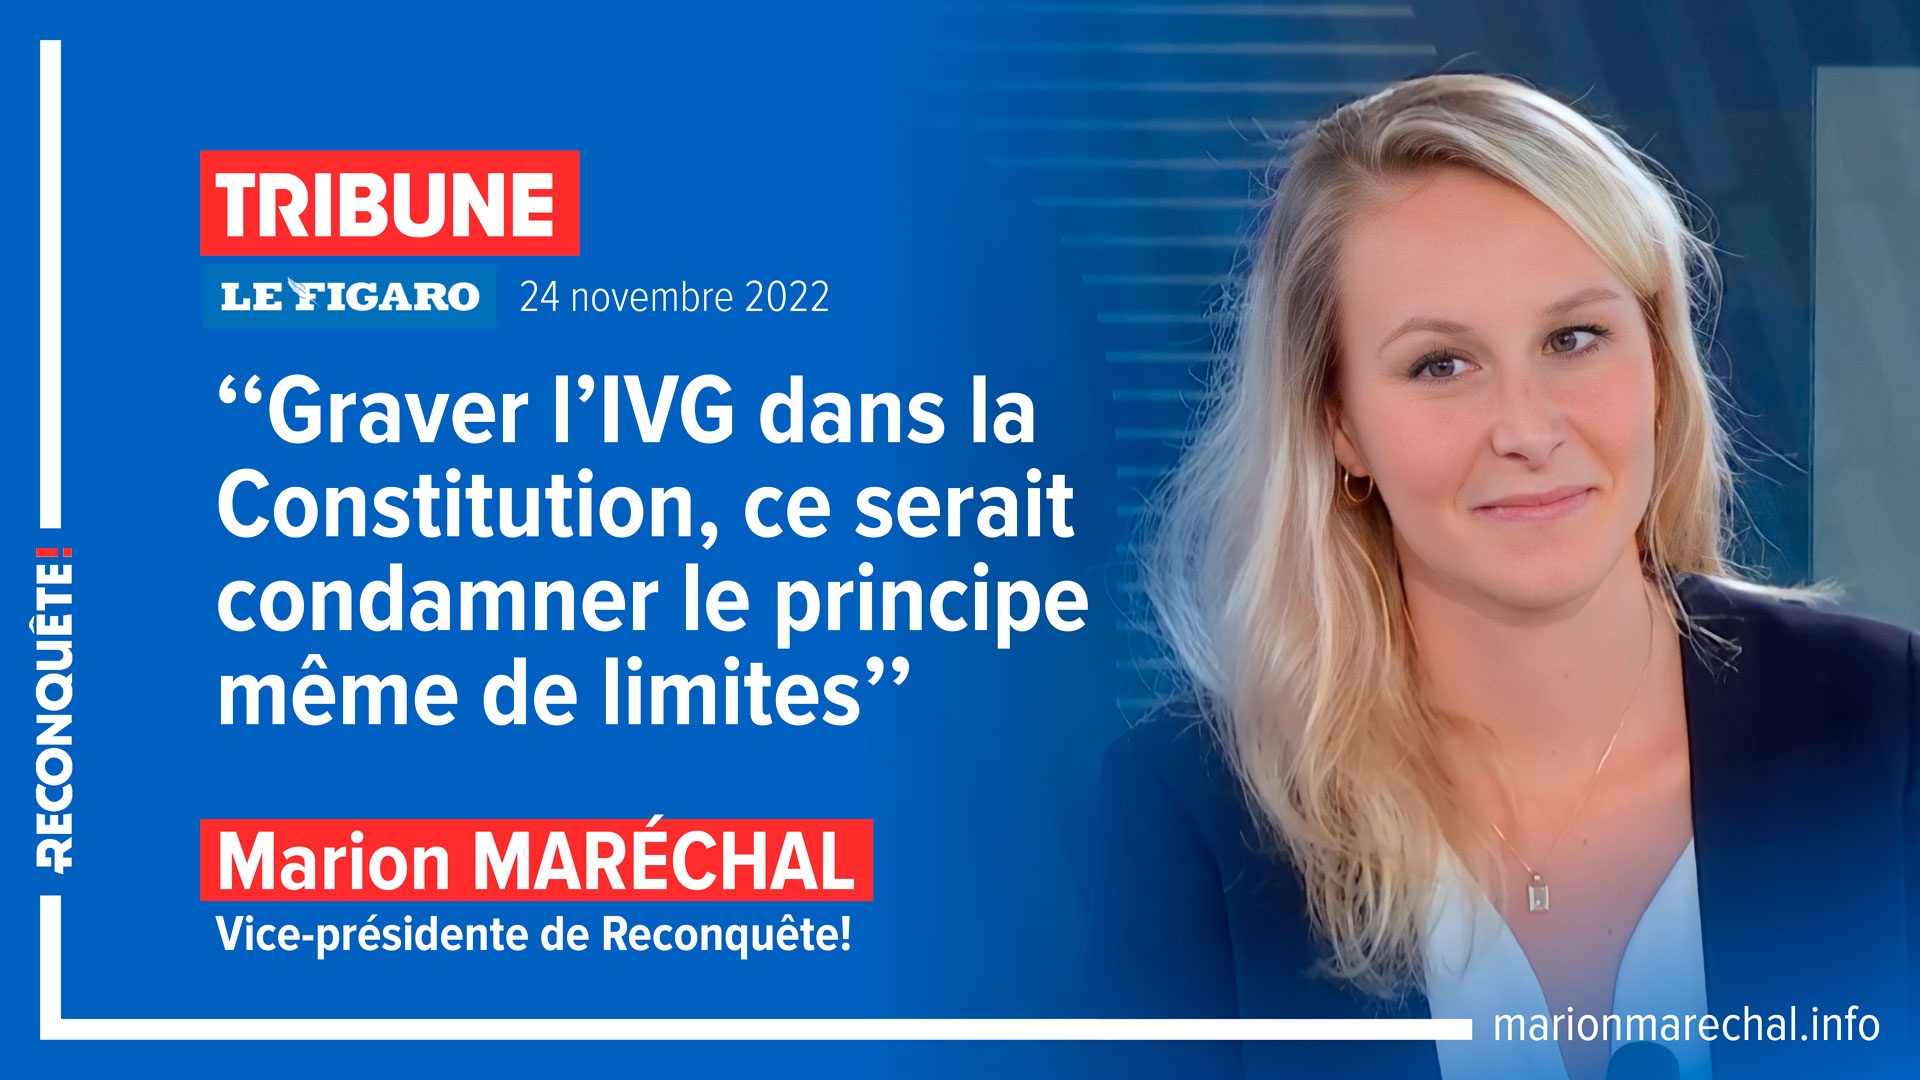 Tribune Marion Maréchal IVG Le Figaro